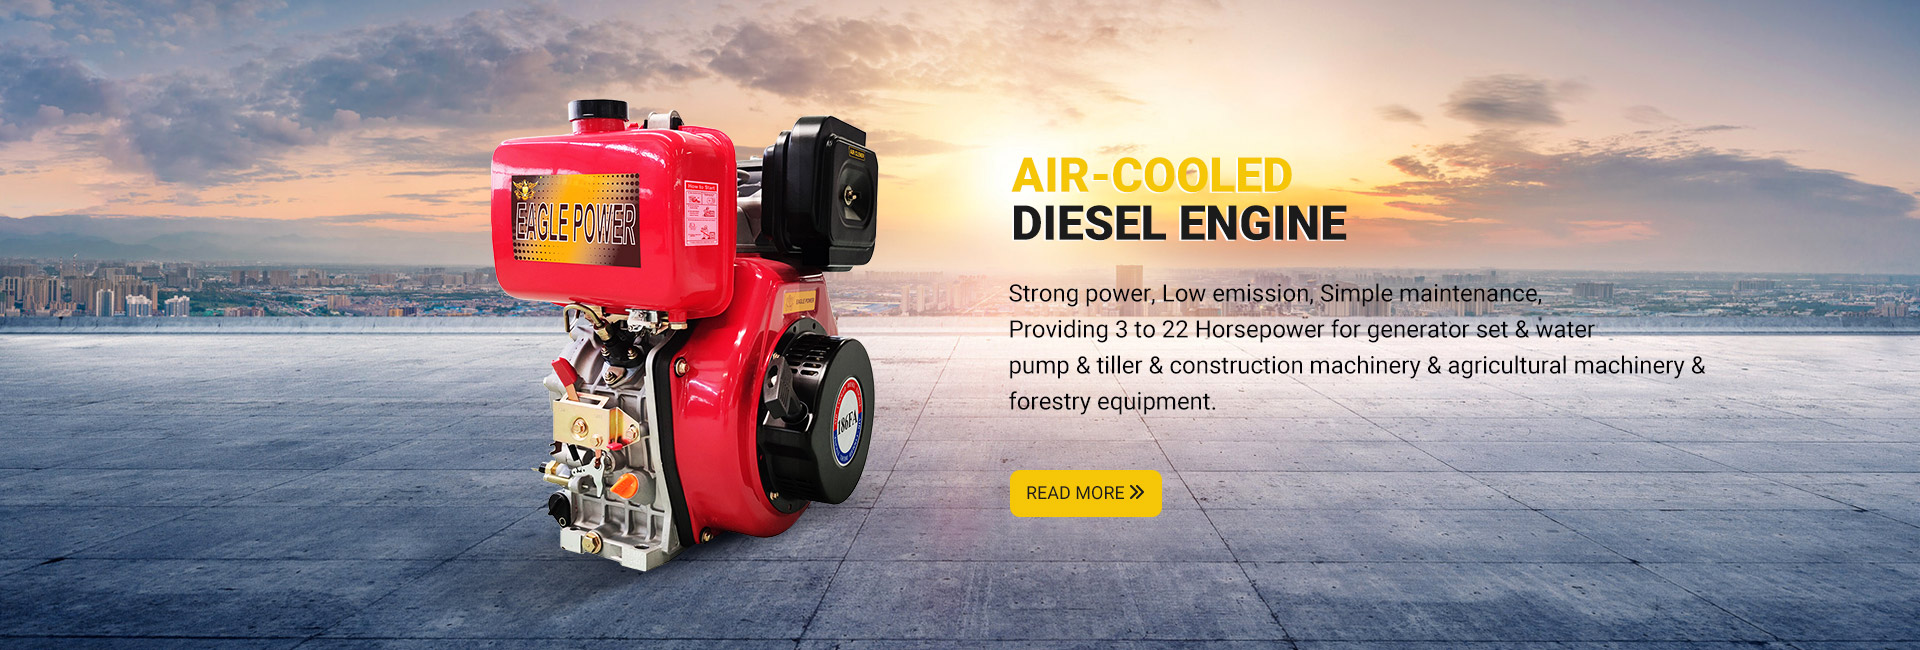 Air-cooled Diesel Engine